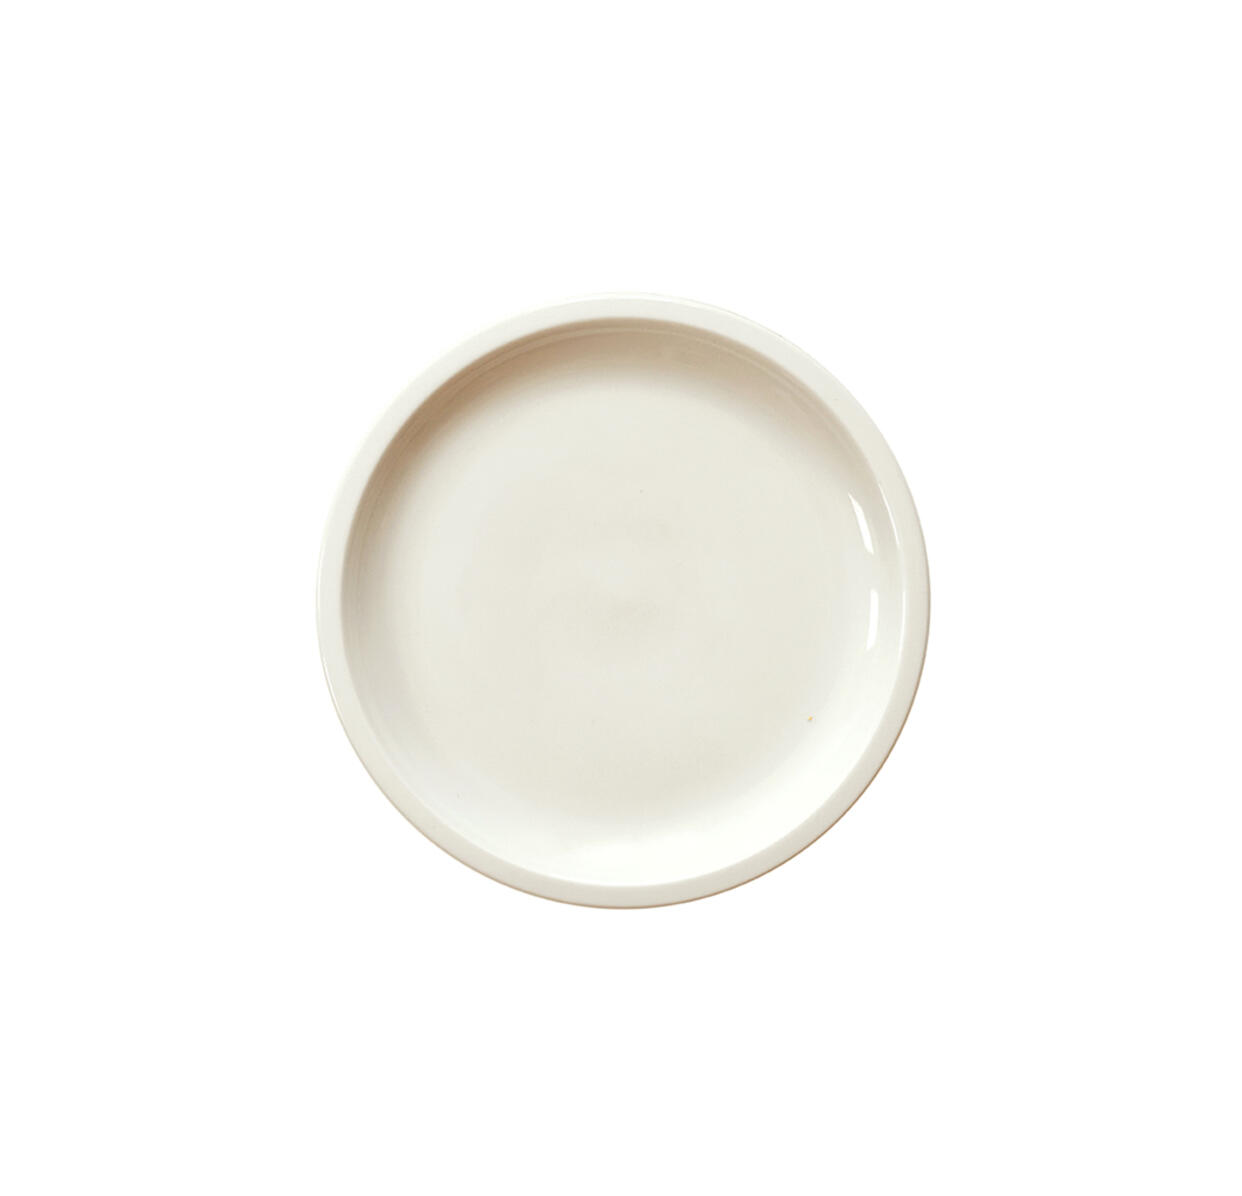 plate xs cantine craie ceramic manufacturer